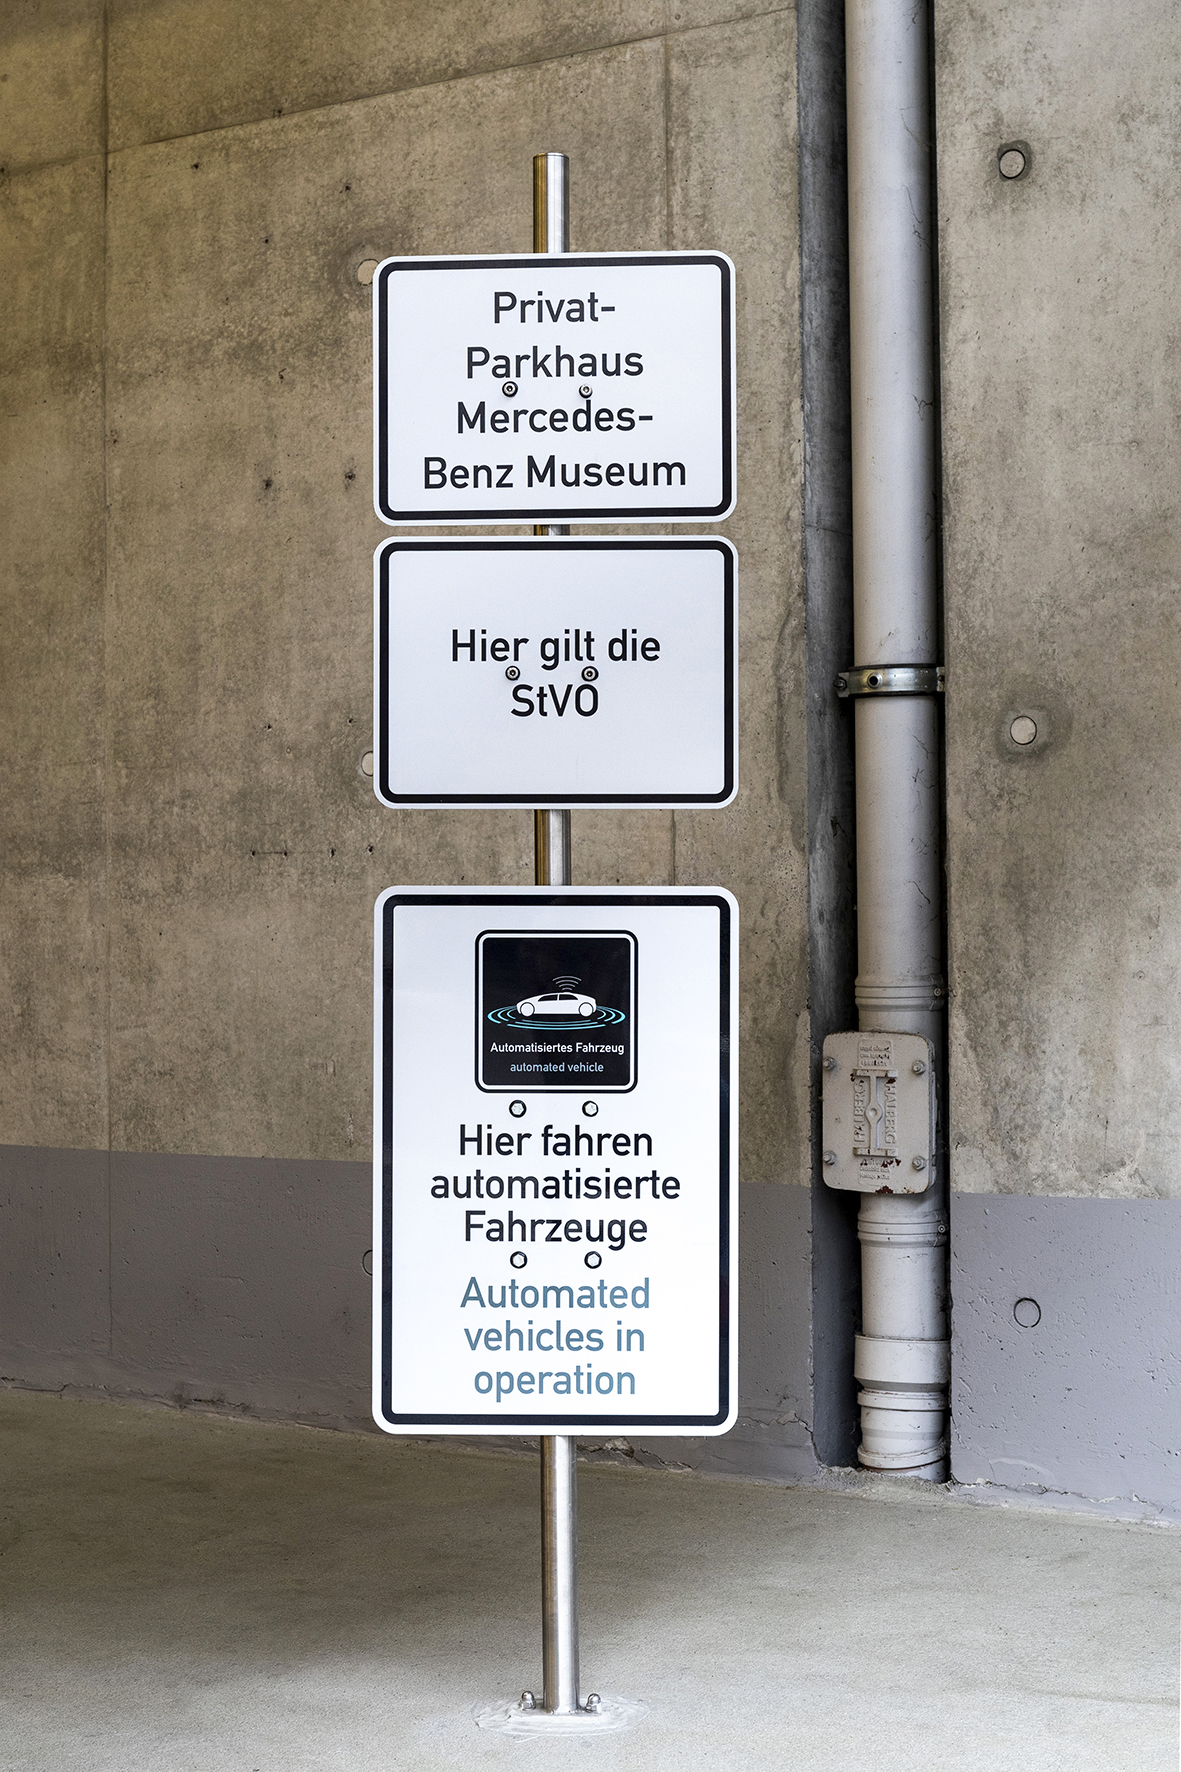 Anteprima mondiale: Bosch e Daimler ottengono l'approvazione per il parcheggio autonomo senza supervisione